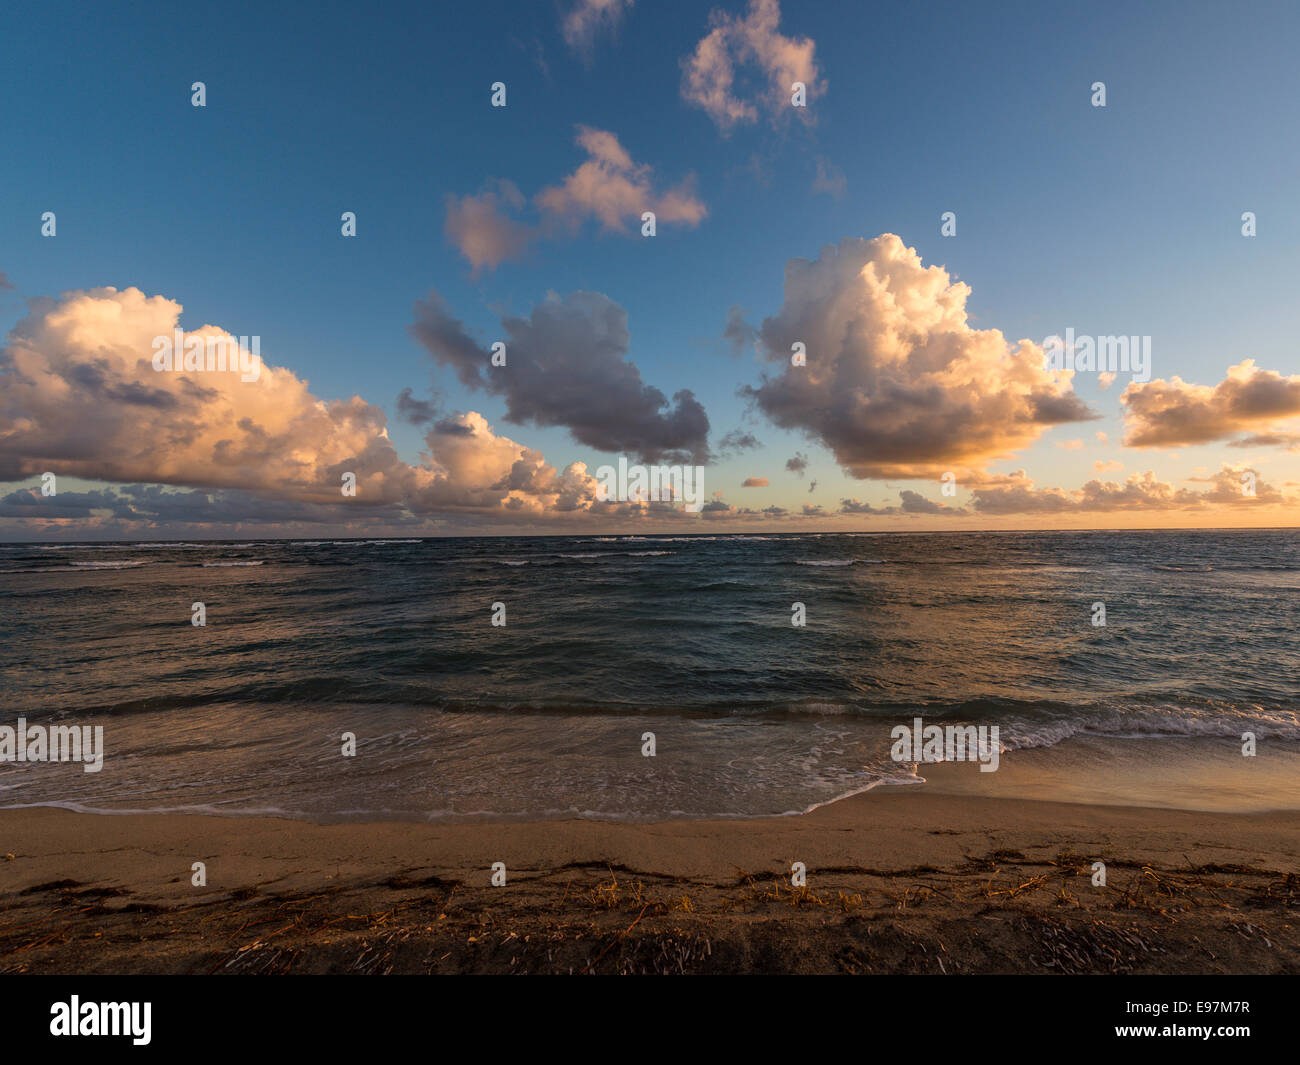 Paysage - Lever de soleil réfléchissant la lumière sur une formation nuageuse avec de longs courriers Bay Beach et la mer des Caraïbes à l'avant-plan. Banque D'Images